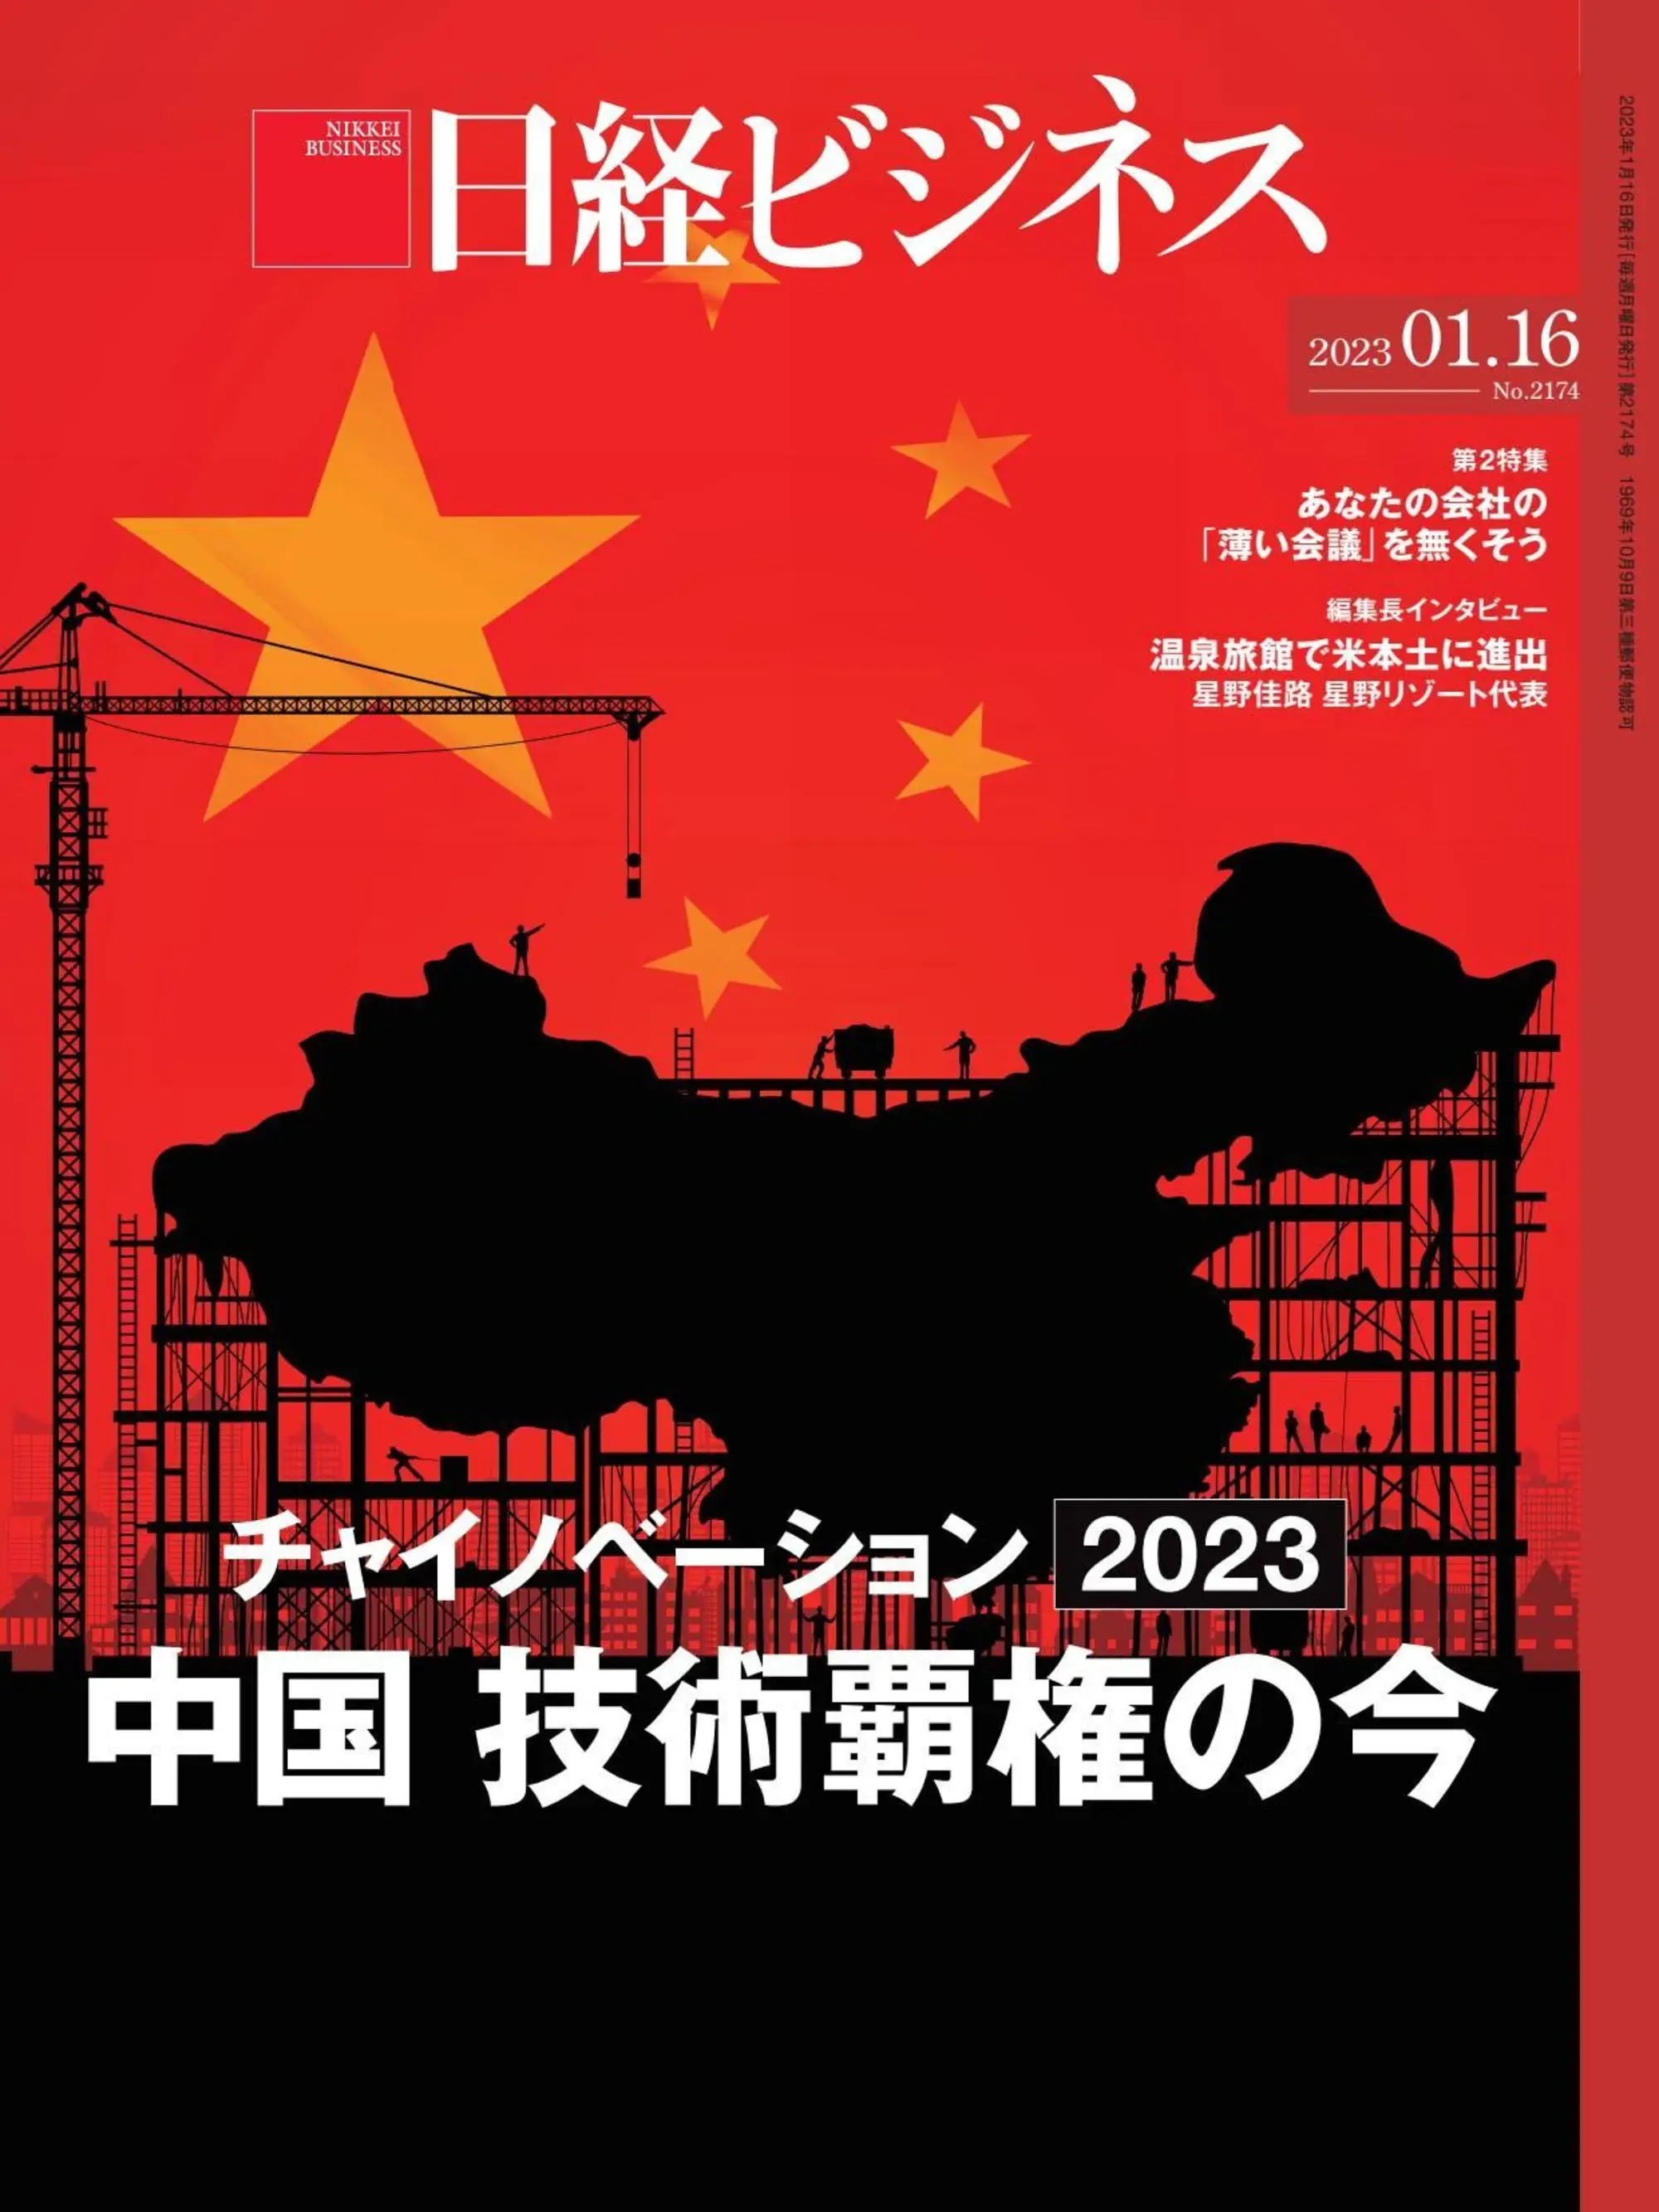 日経ビジネス Nikkei Business – 2023 1月 12